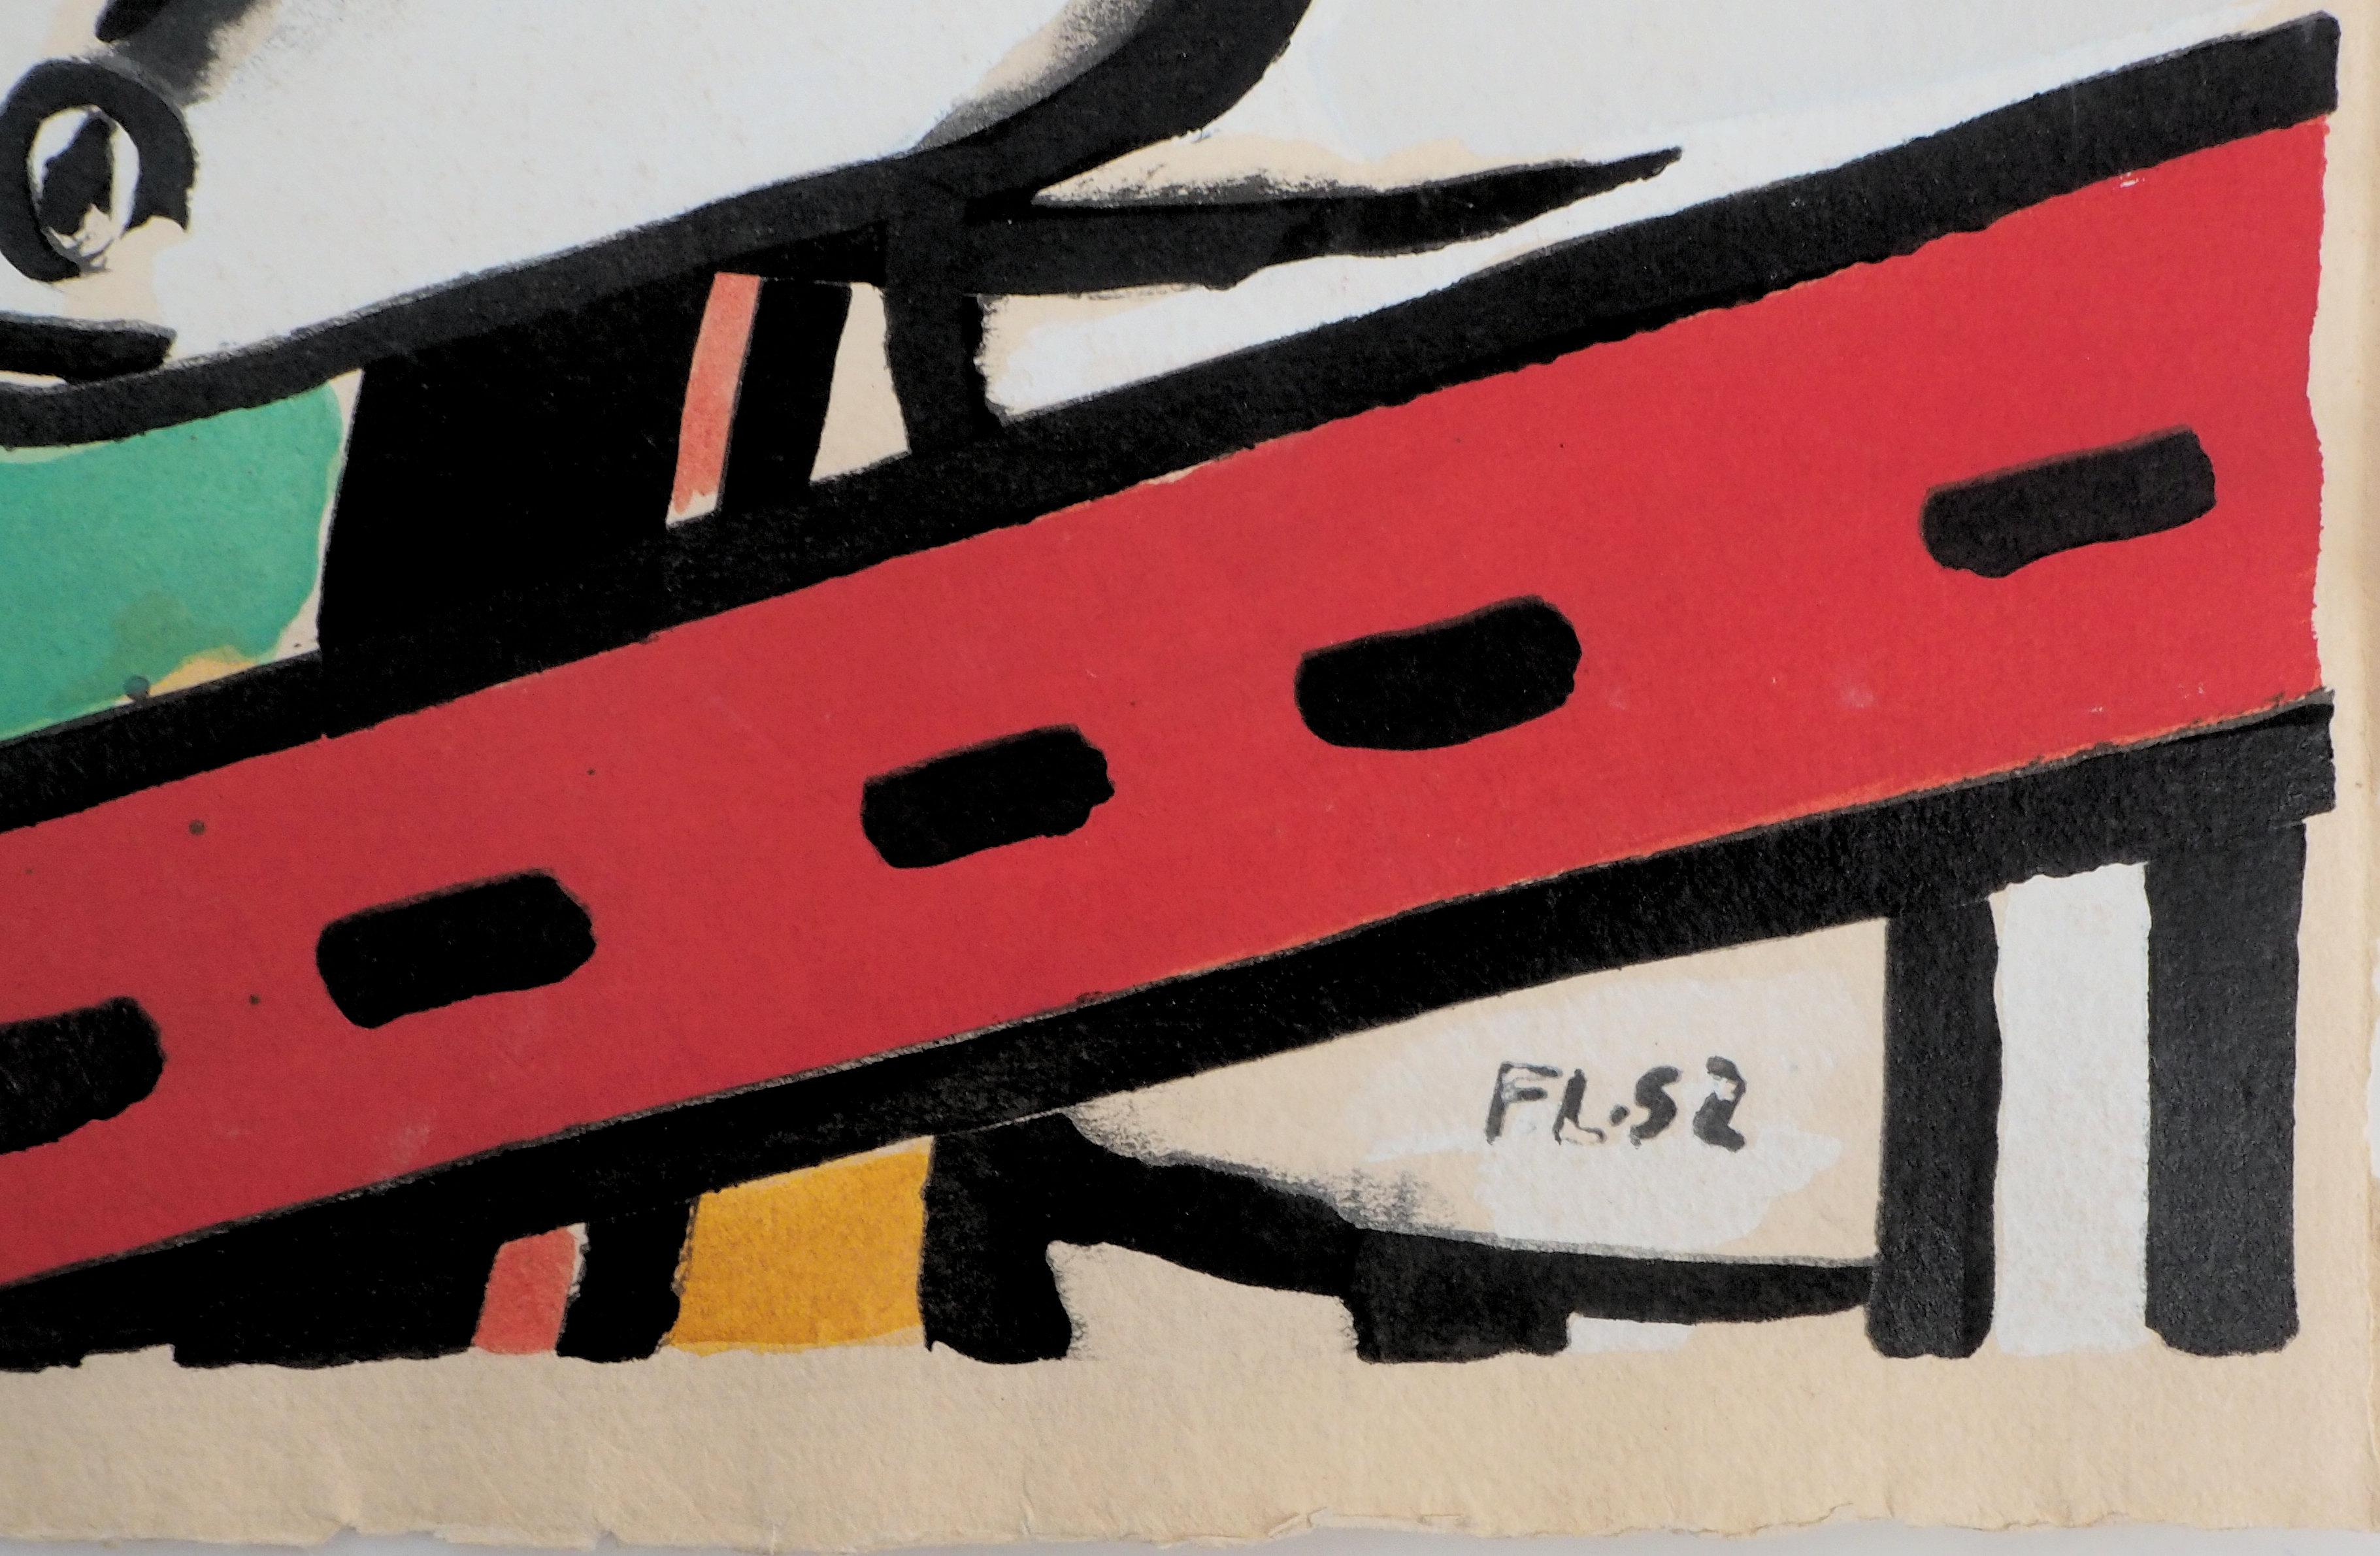  Stuhl, Hut und Kuh - Lithographie und Bleistift, 1959 – Print von Fernand Léger